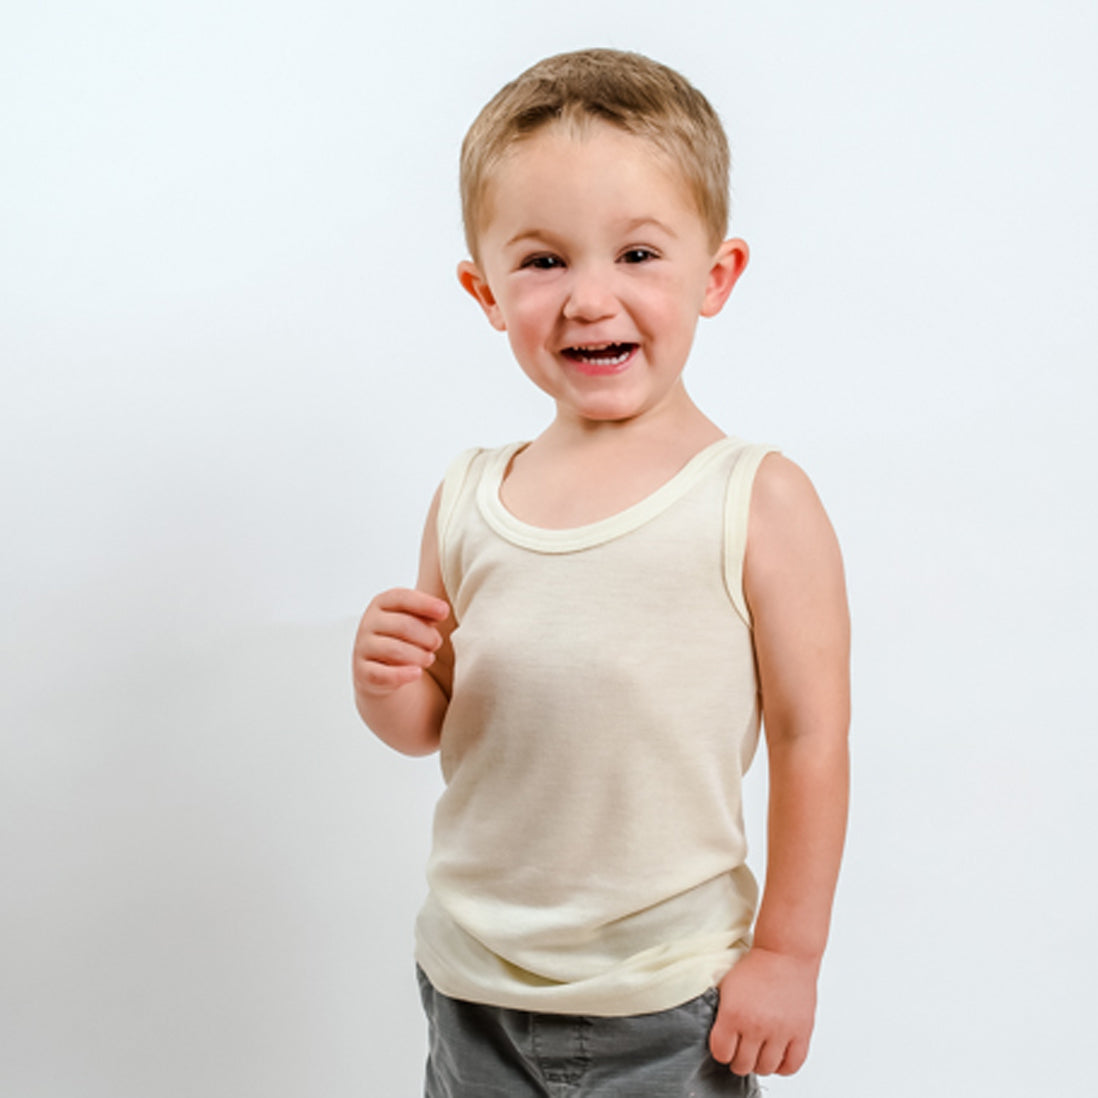 HOCOSA Kids' Organic Merino Wool Sleeveless Undershirt - NATURAL WHITE